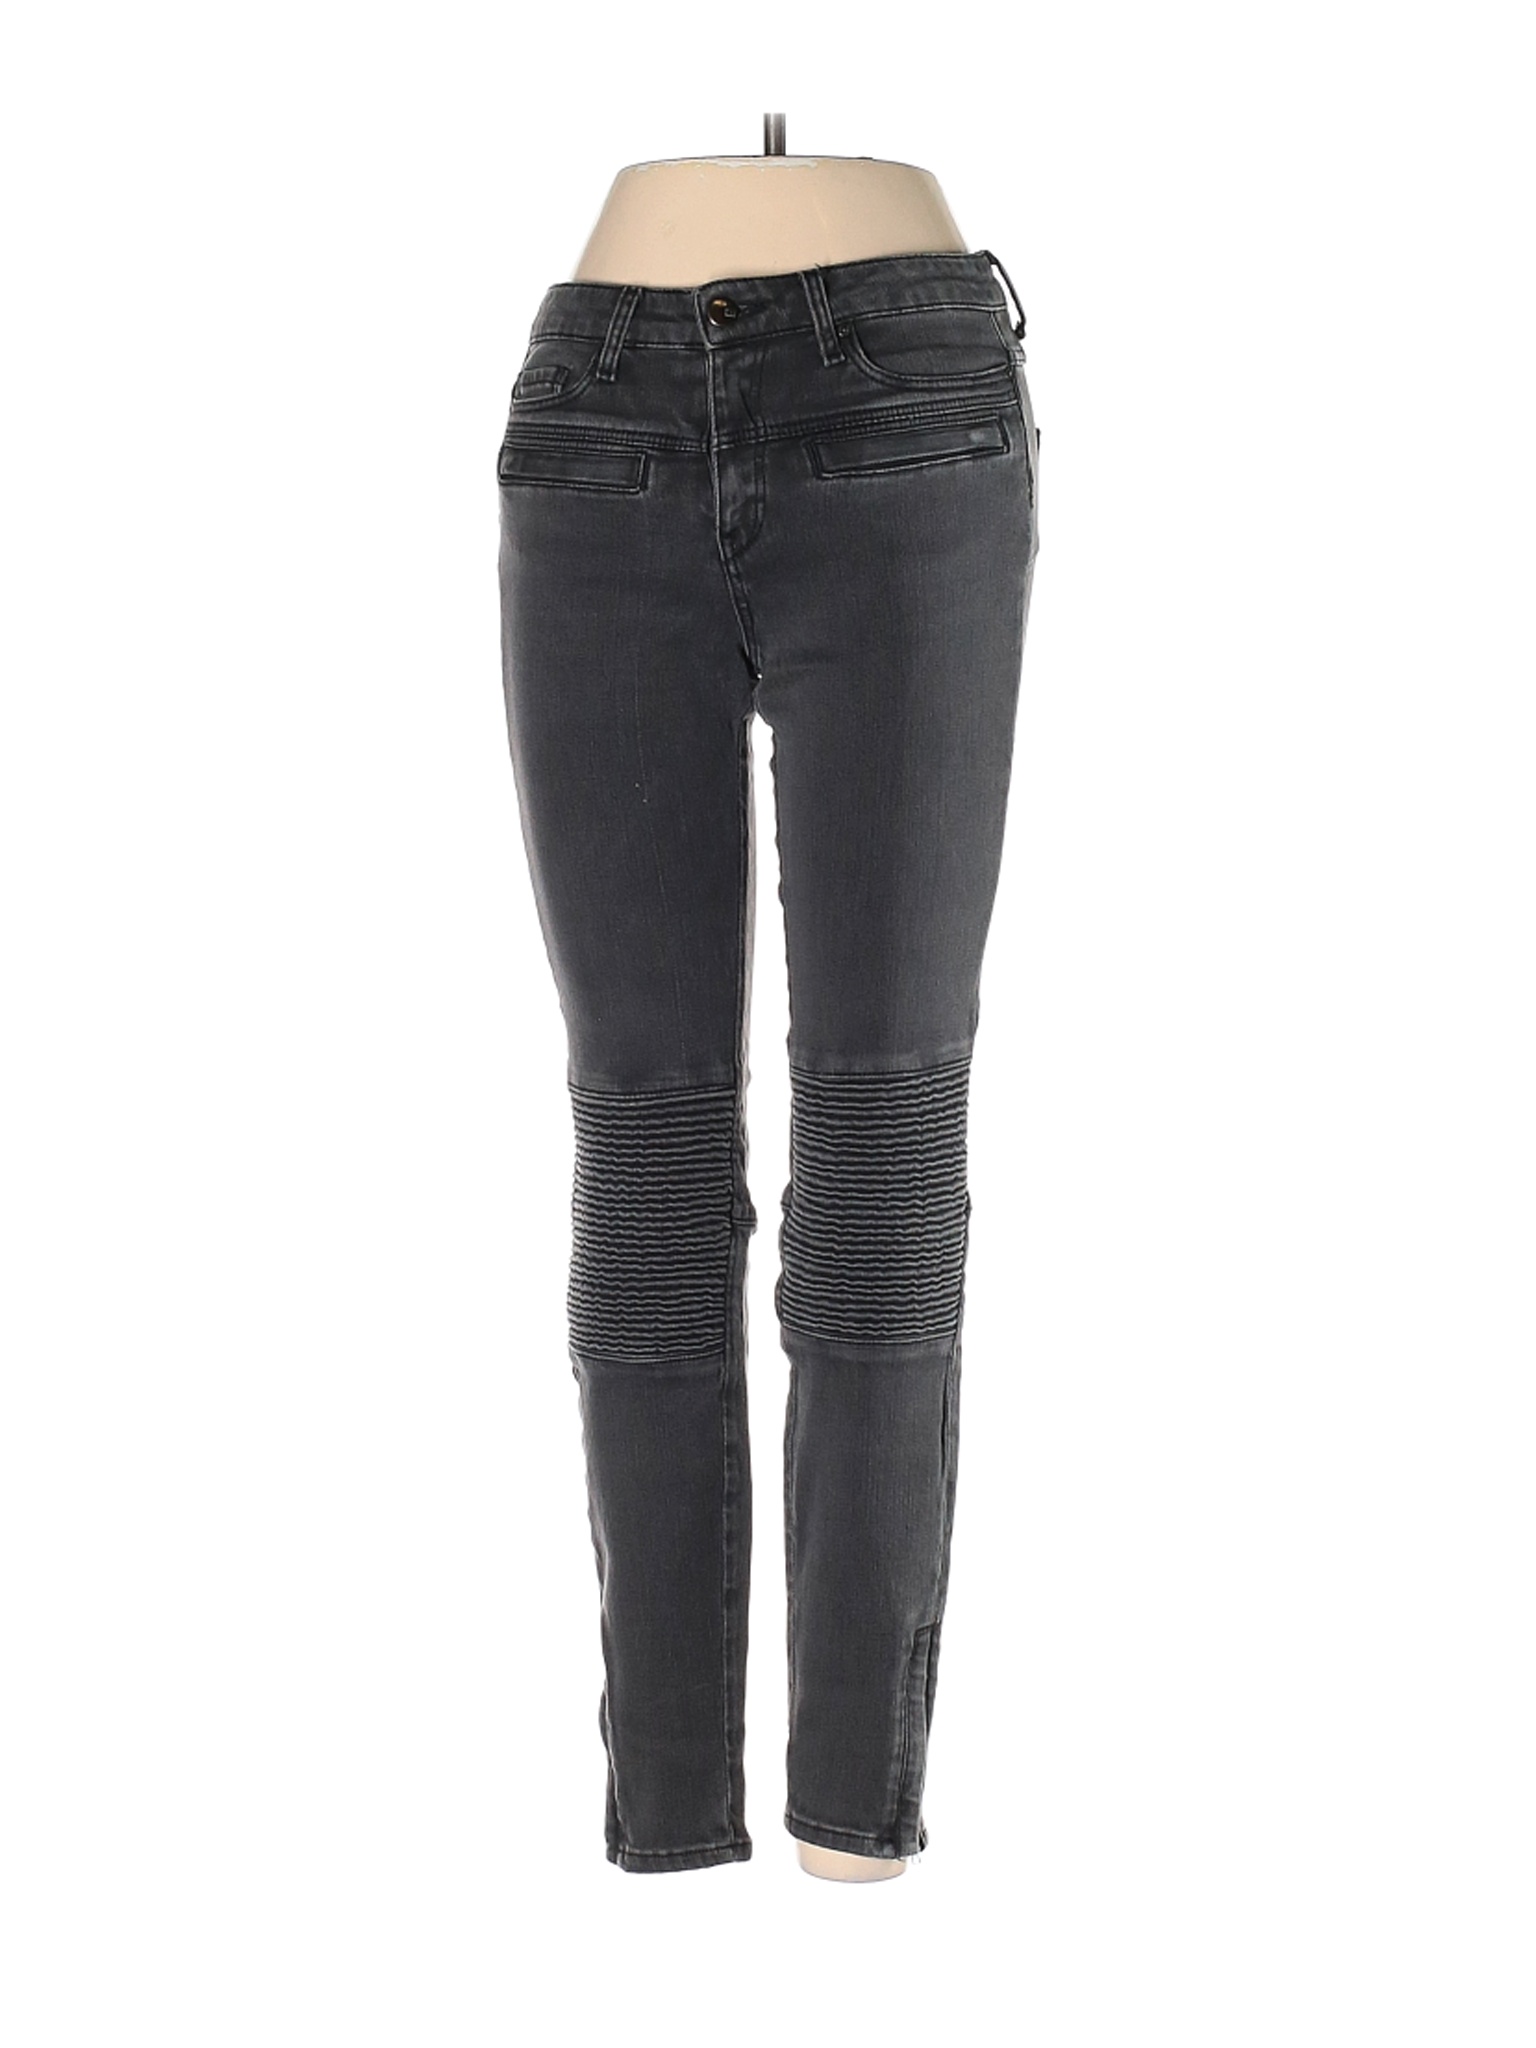 Zara Women Gray Jeans 2 | eBay